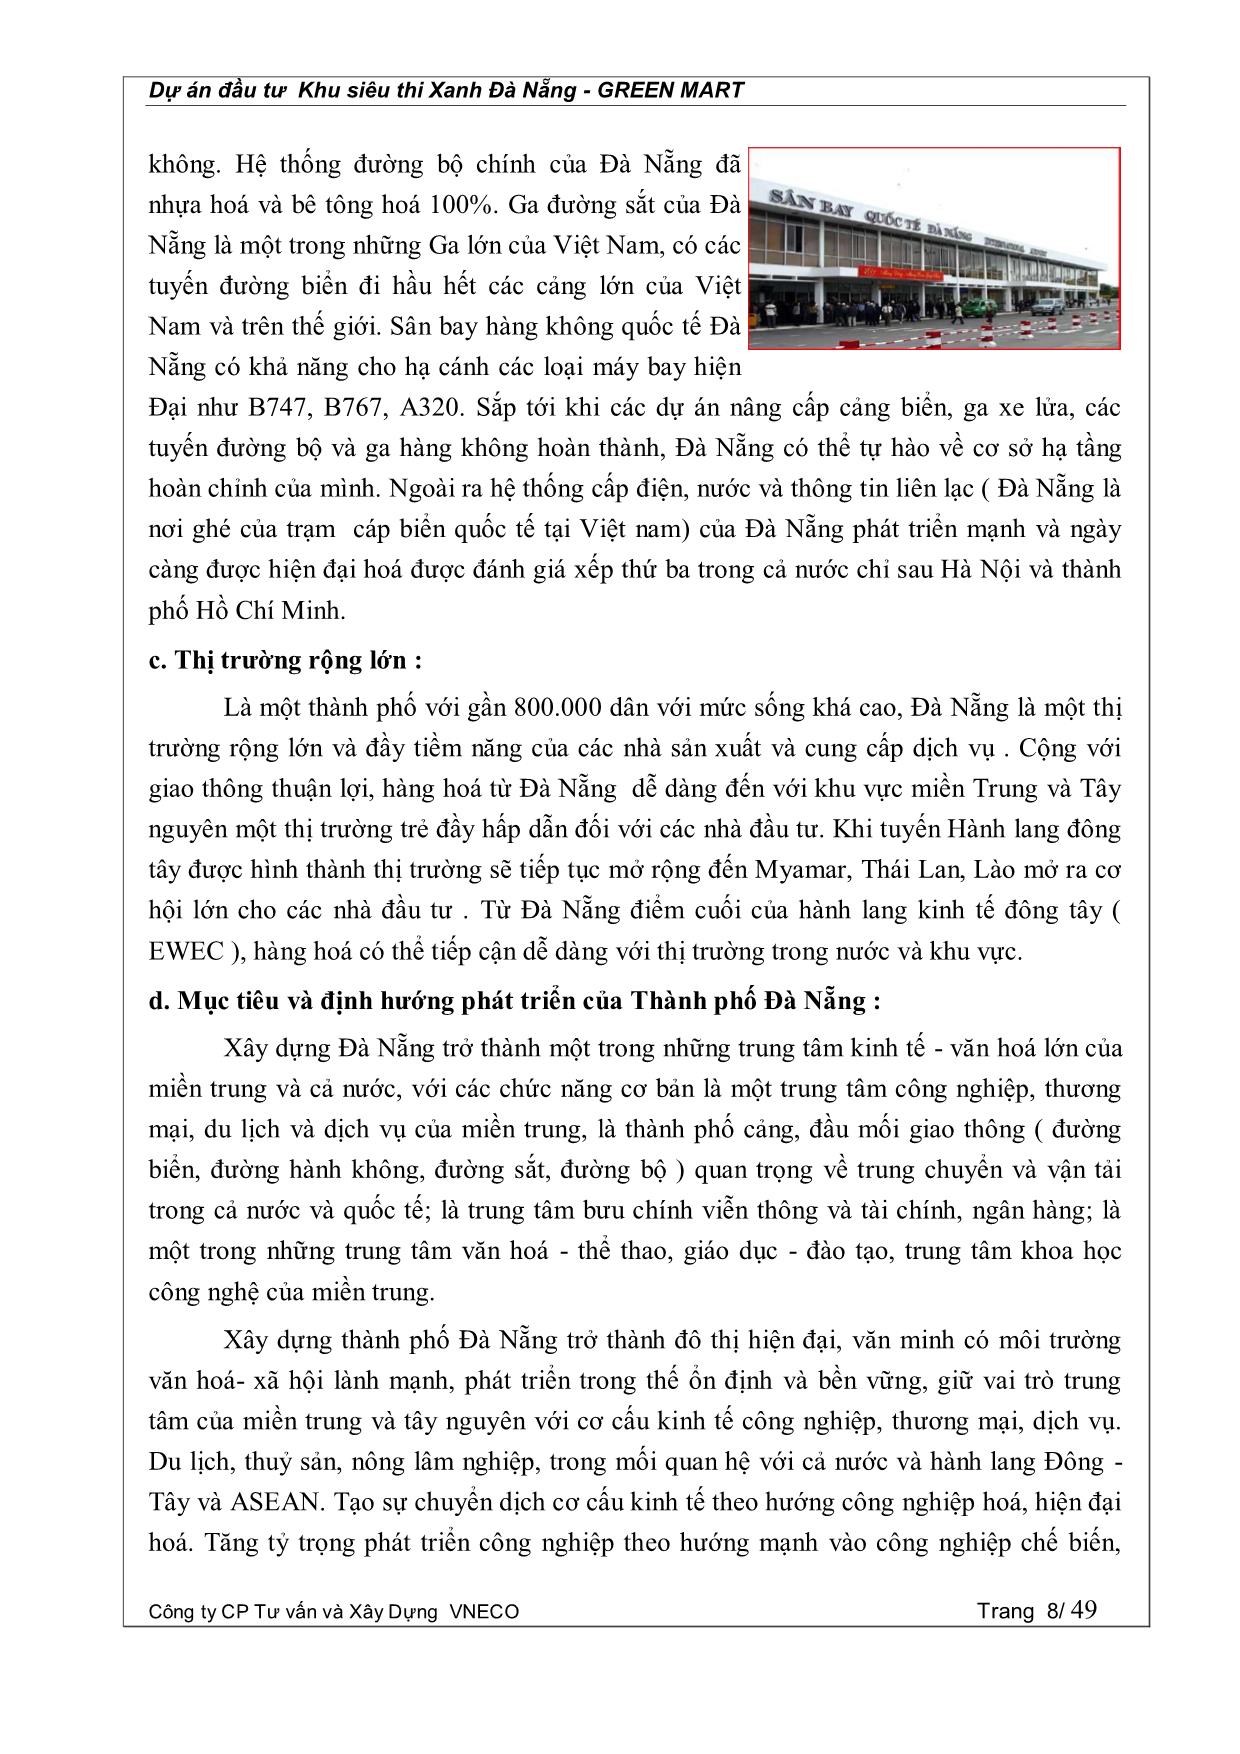 Dự án đầu tư Khu siêu thị xanh Đà Nẵng - Green Mart trang 8